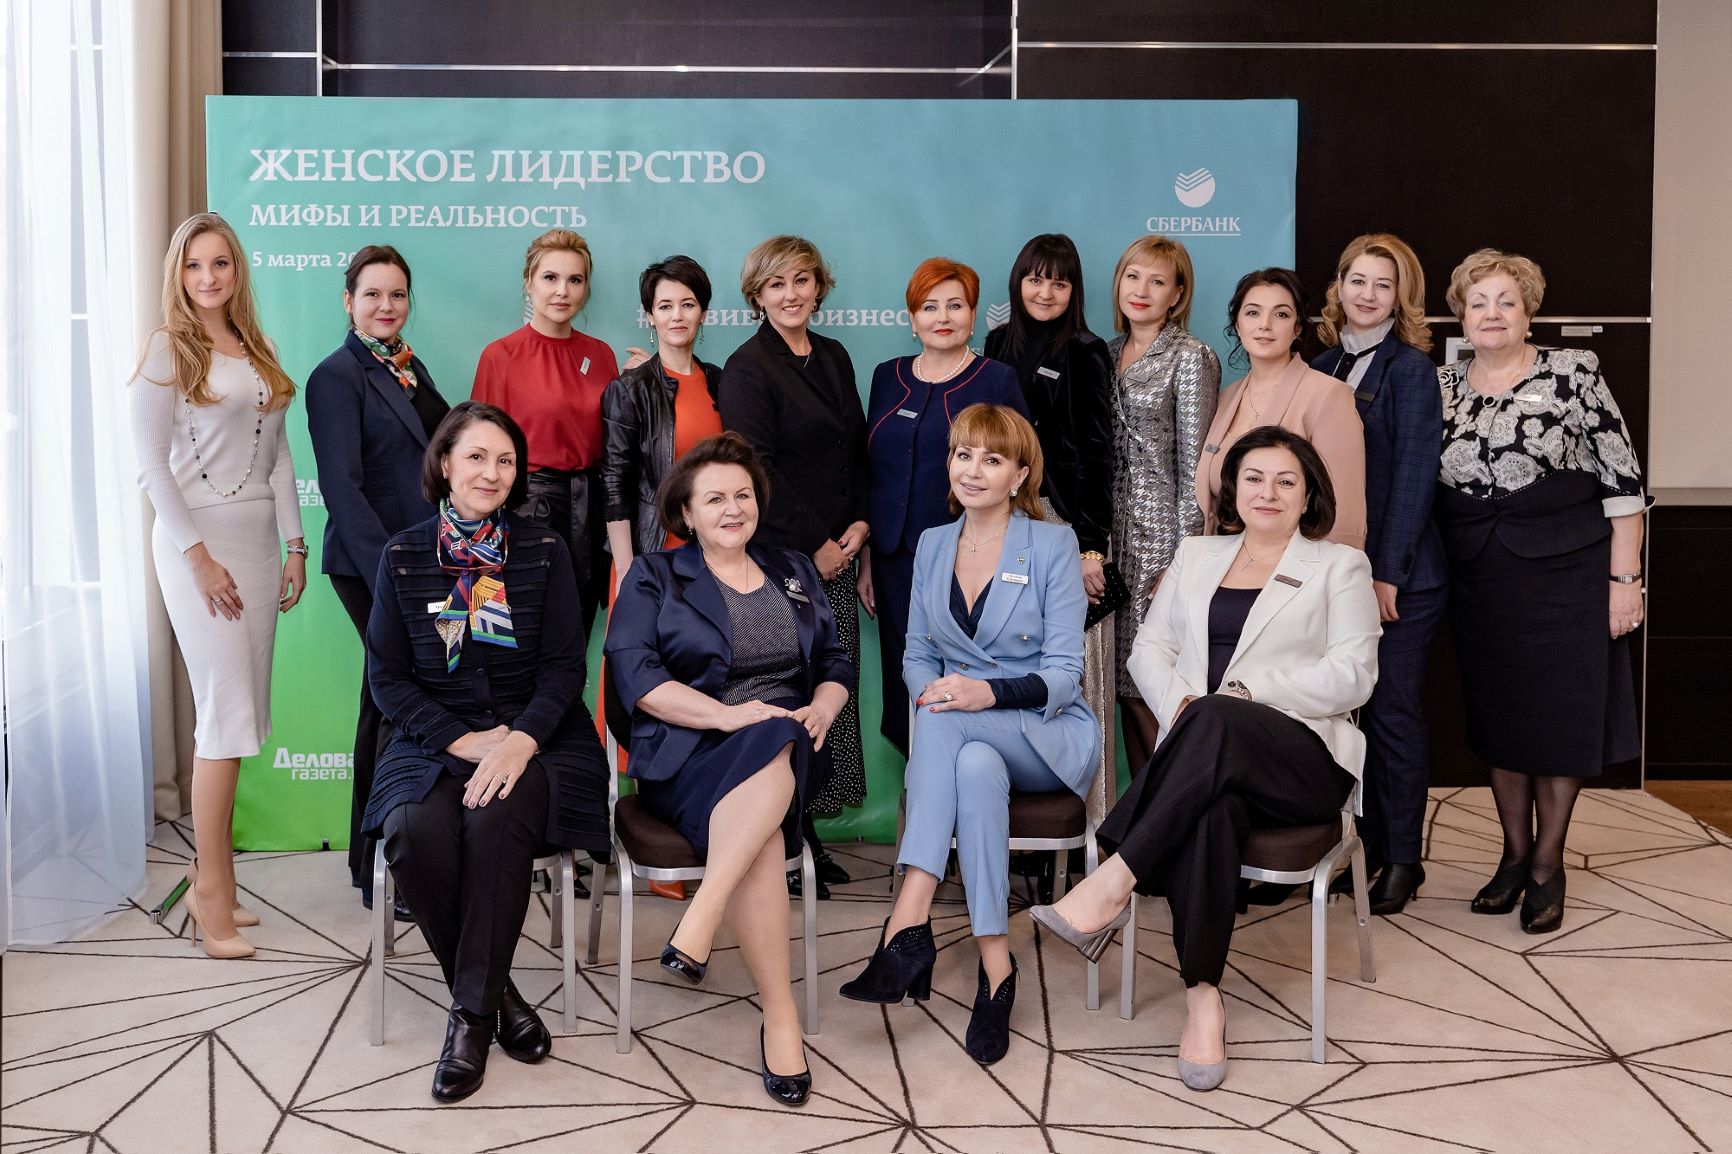 Сбербанк организовал «Клуб деловых женщин» в канун Международного женского дня